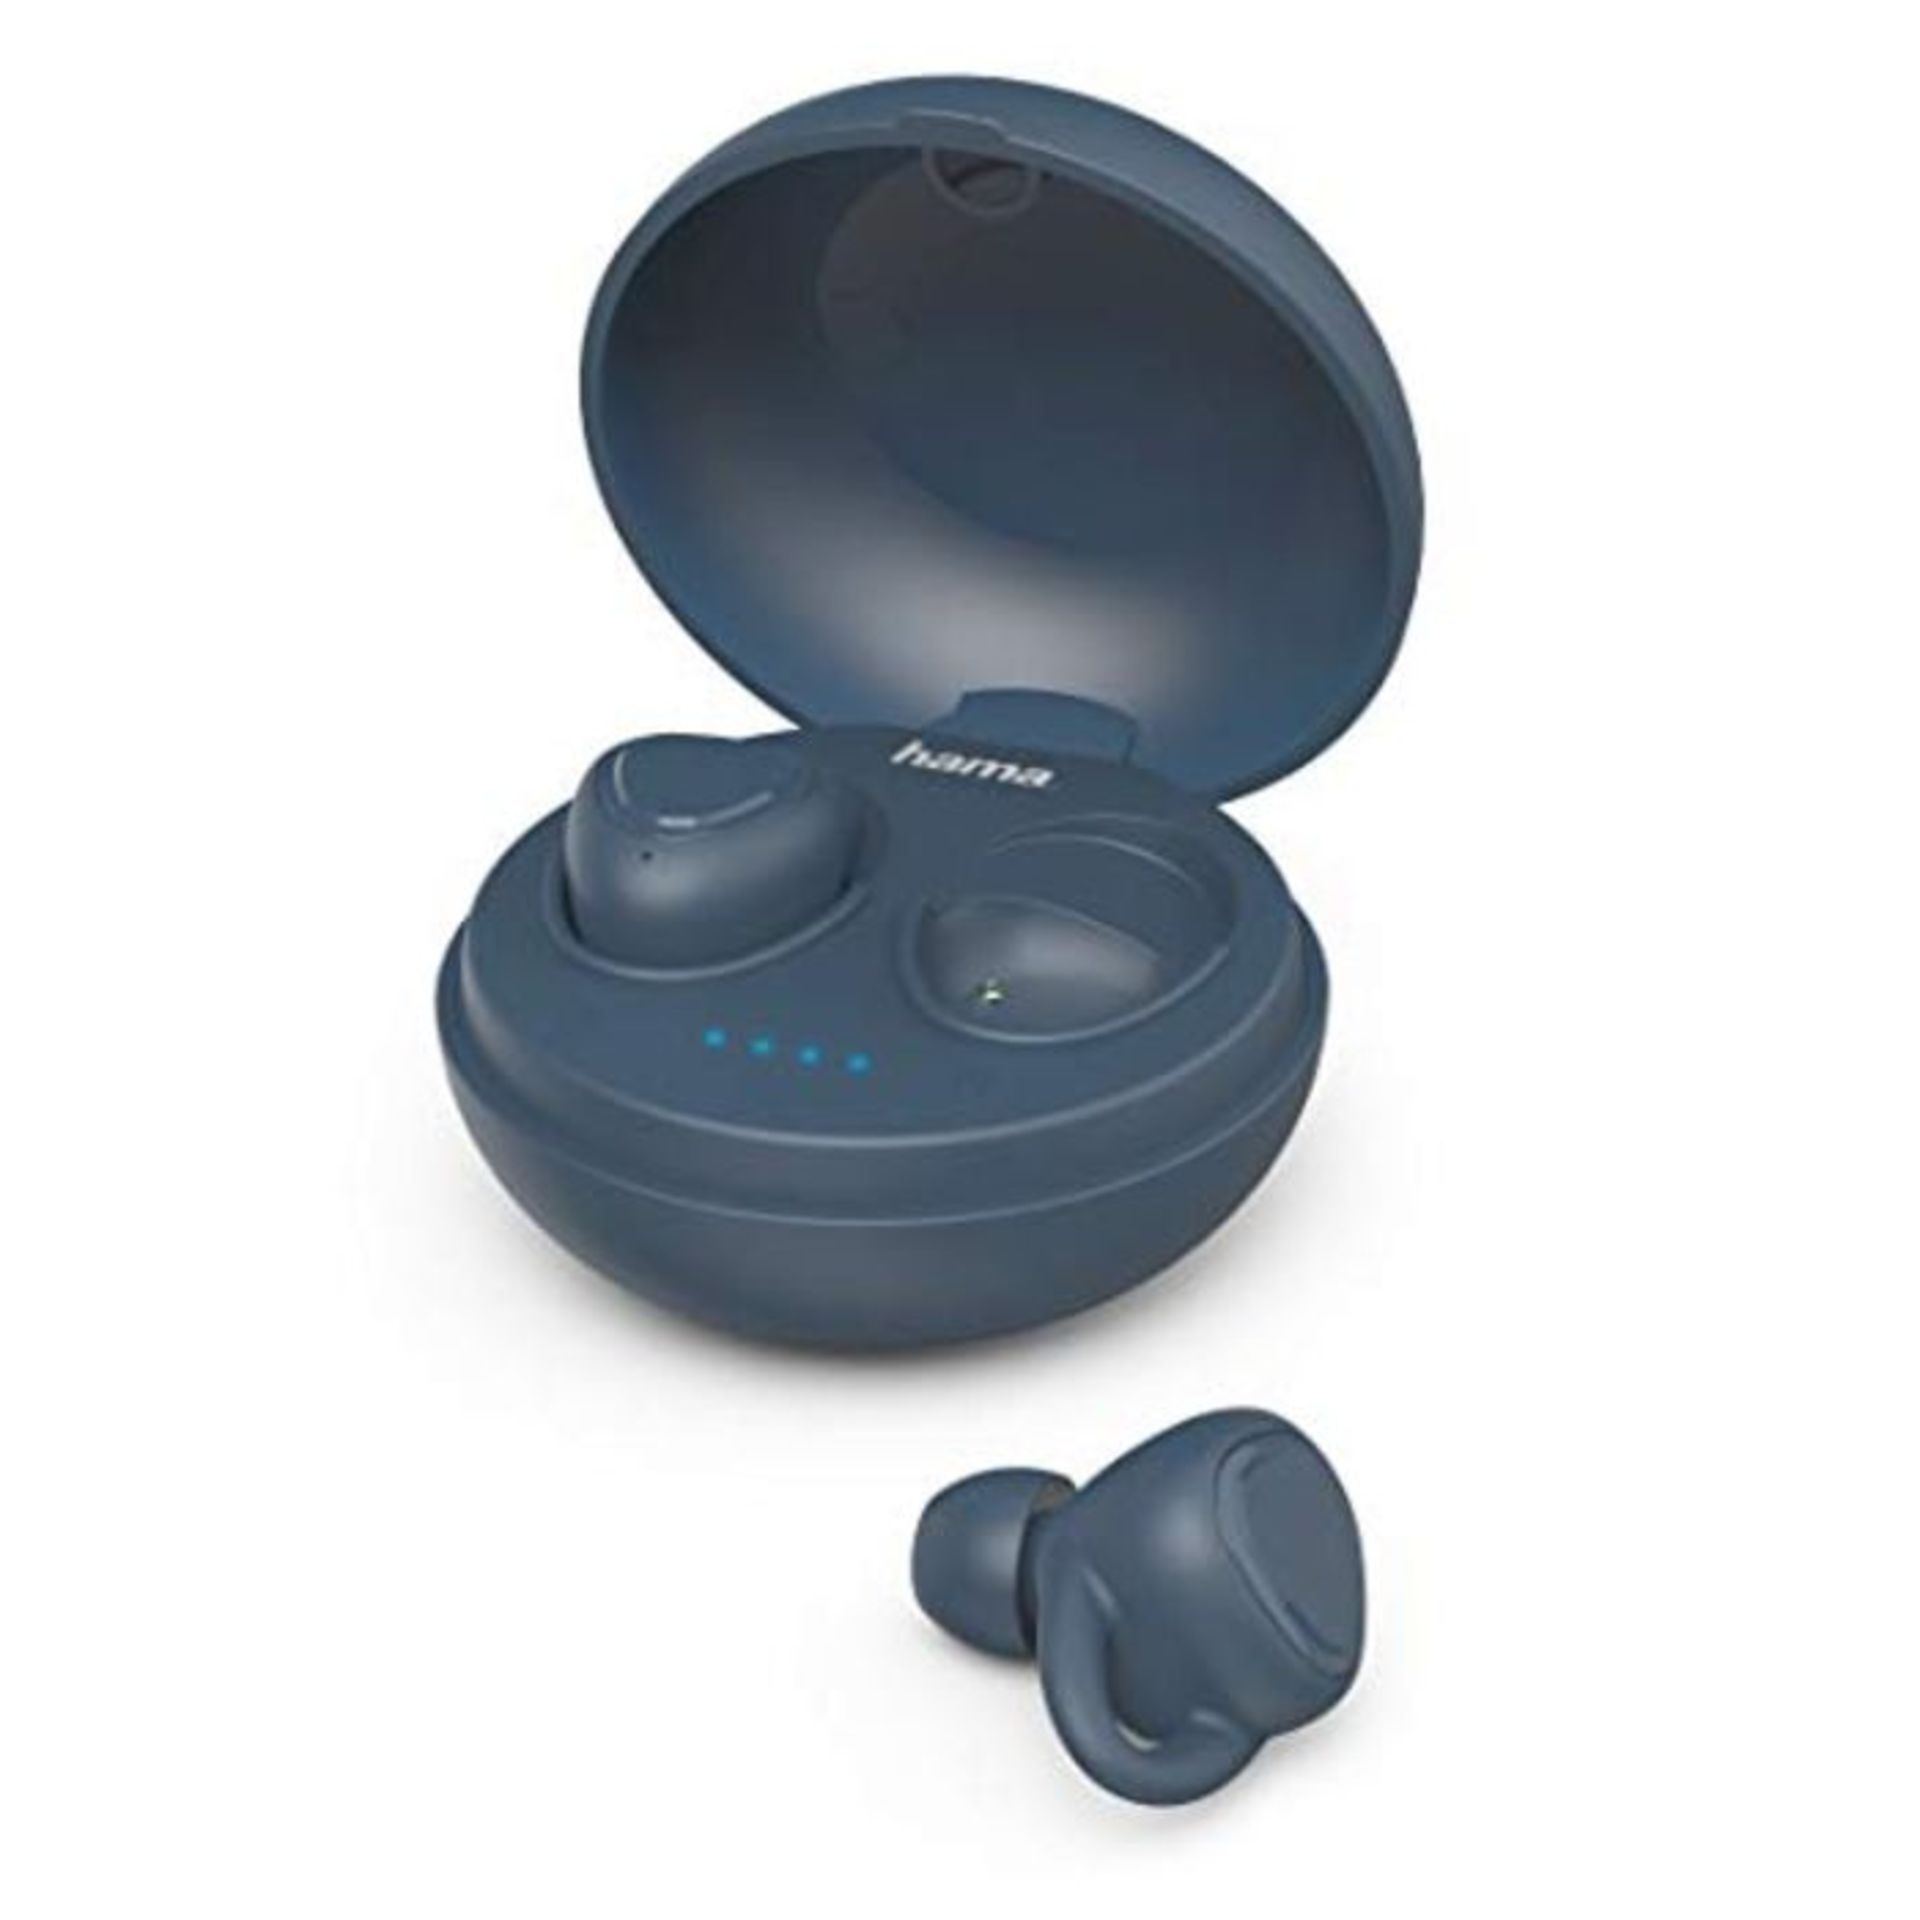 Hama Bluetooth KopfhÃ¶rer blau kabellos (True Wireless In Ear KopfhÃ¶rer mit Sprac